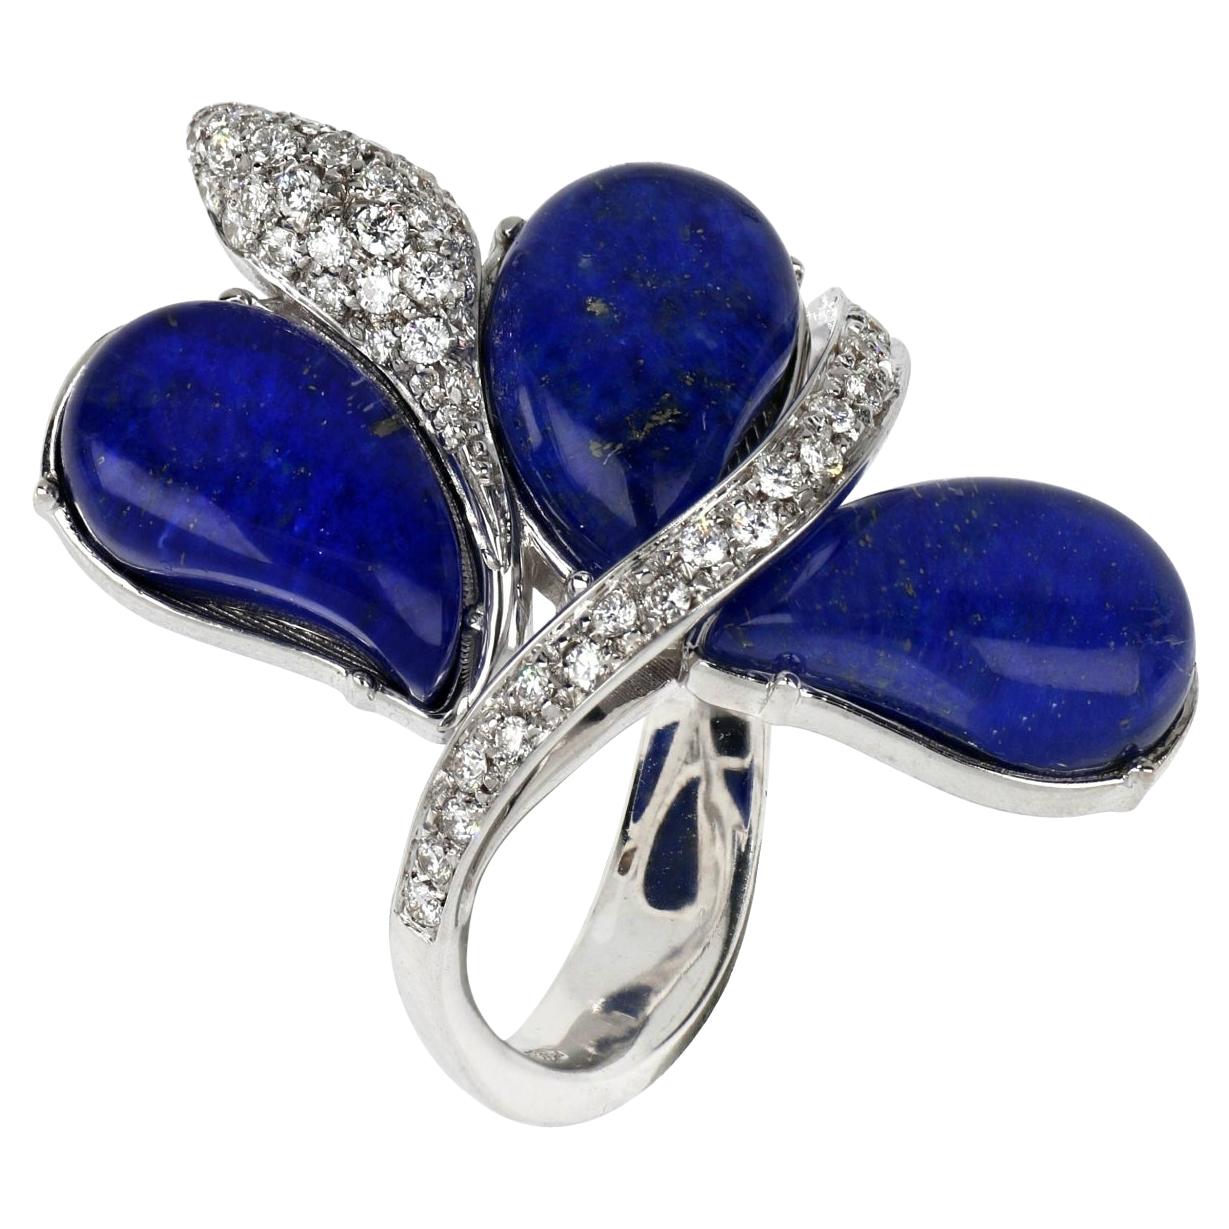 Bague Les Fleurs en or blanc 18 carats avec gouttes de lapis-lazuli bleu et diamants